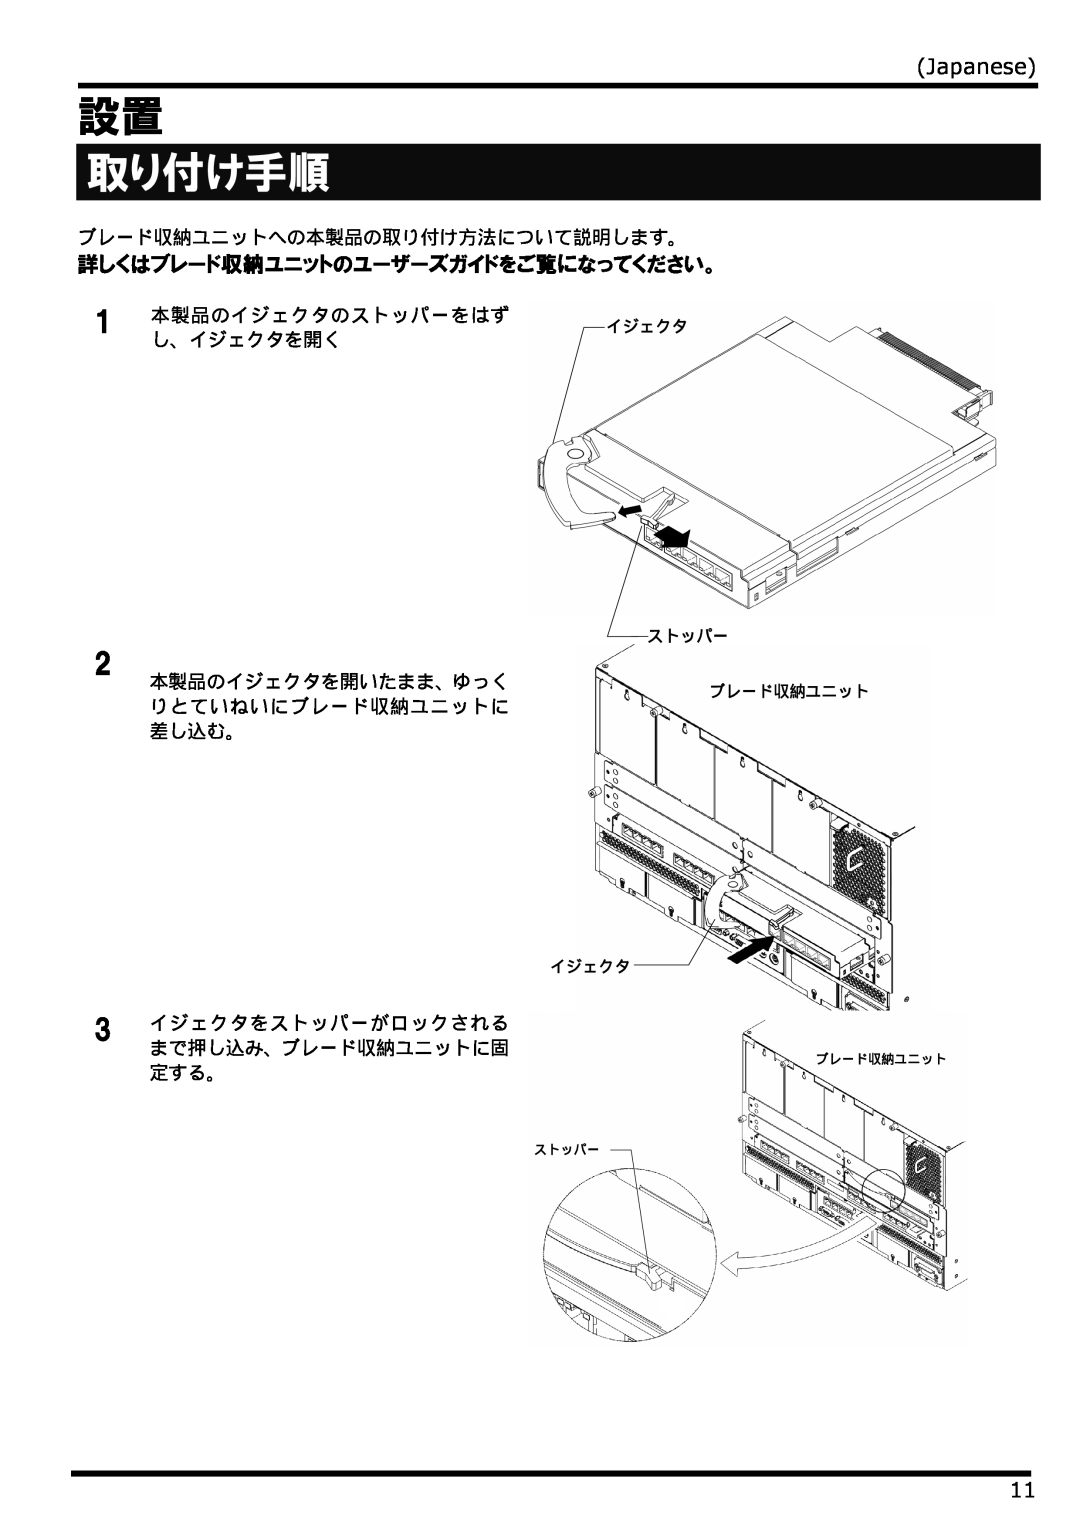 NEC N8406-022 manual 取り付け手順, Japanese, 詳しくはブレード収納ユニットのユーザーズガイドをご覧になってください。, イジェクタ, ストッパー 